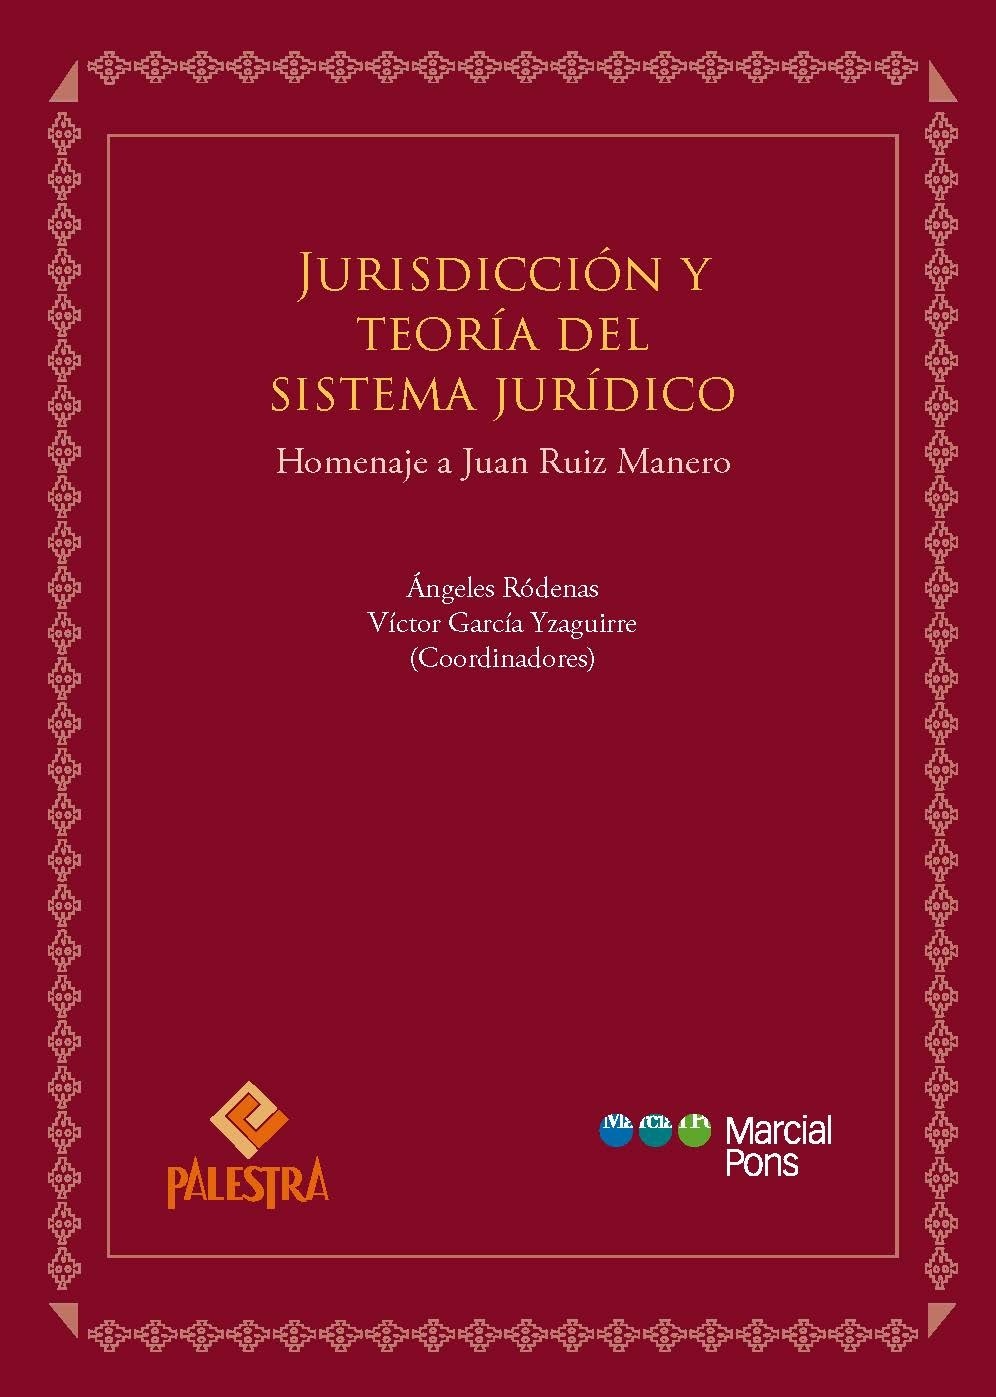 Jurisdicción y teoría del sistema jurídico. Homenaje a Juan Ruiz Manero "Homenaje a Juan Ruiz Manero"